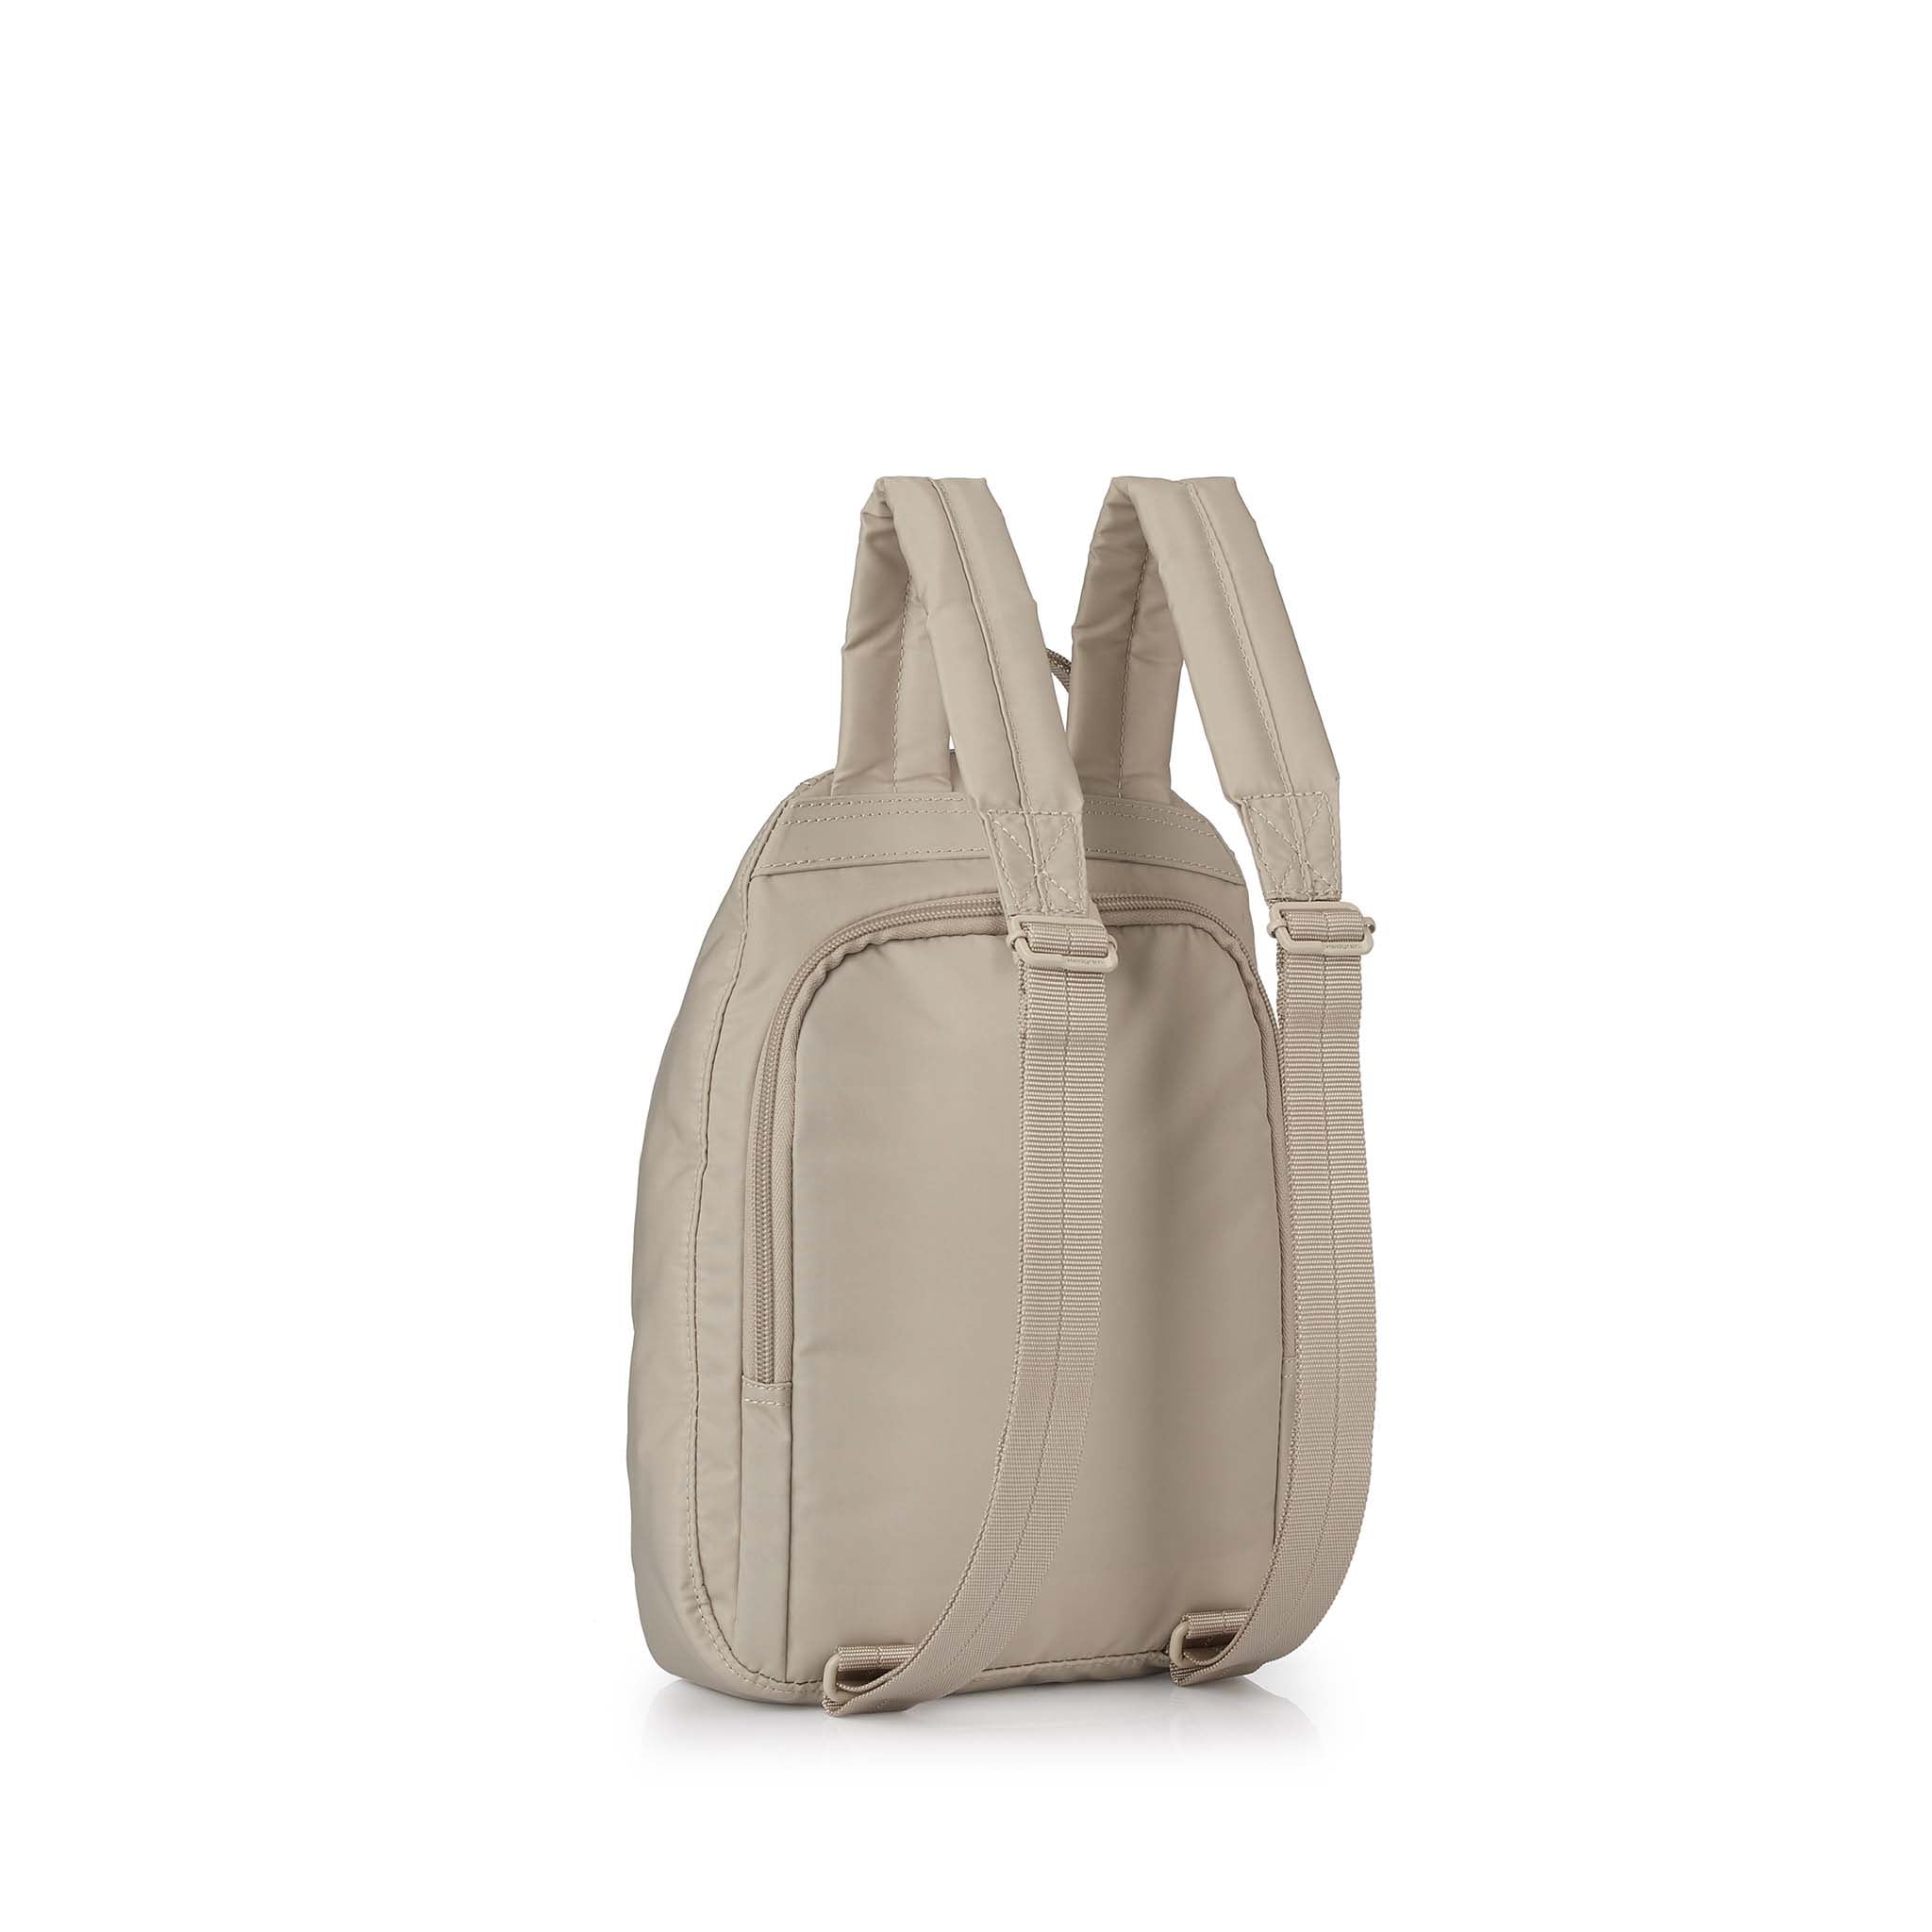 Hedgren Vogue RFID Backpack Cashmere